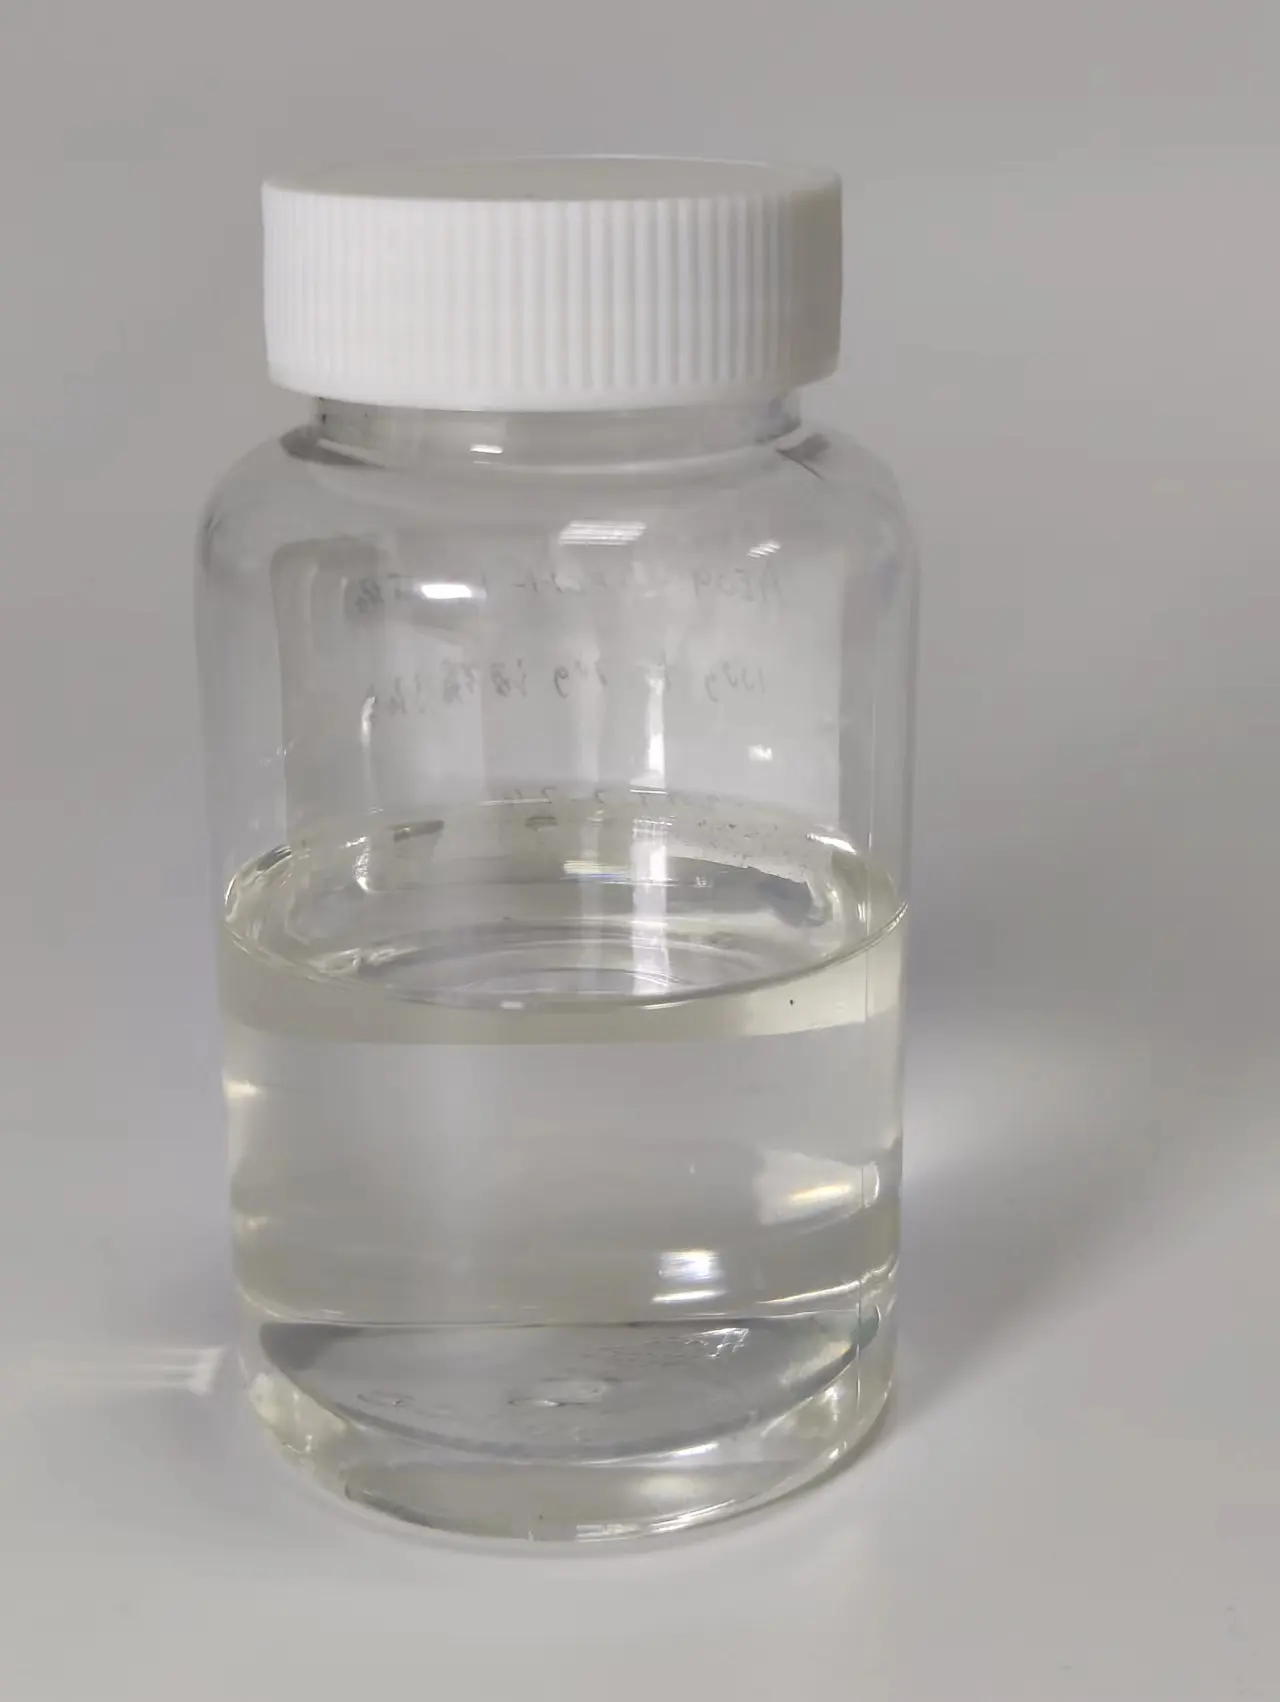 脂肪アルコールアルコールエーテル硫酸アンモニウム塩低発泡高効率エミュレータ陰イオン性表面活性剤Genisal 3136